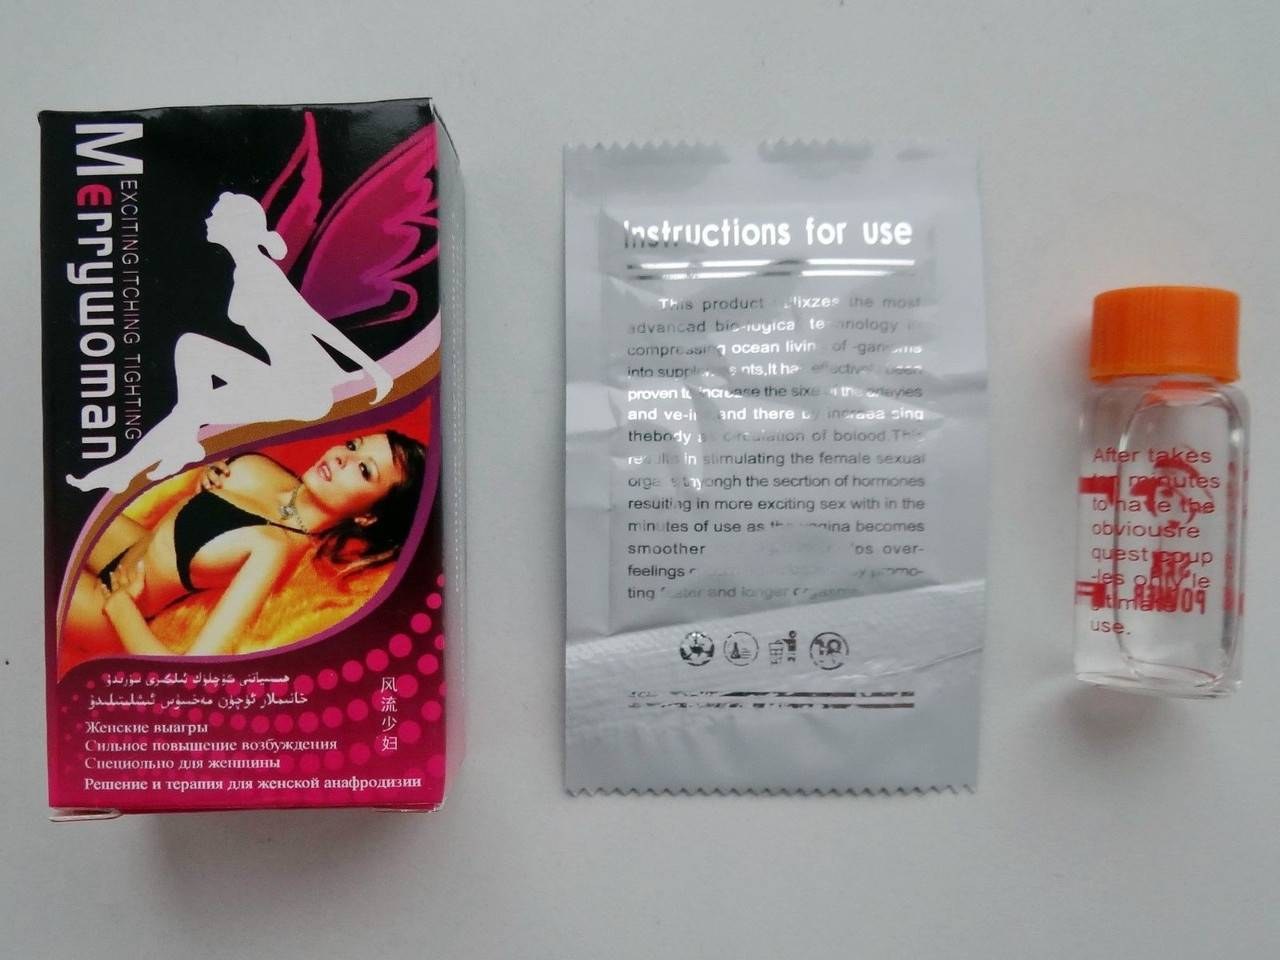 таблетки для оргазма мужчины фото 22